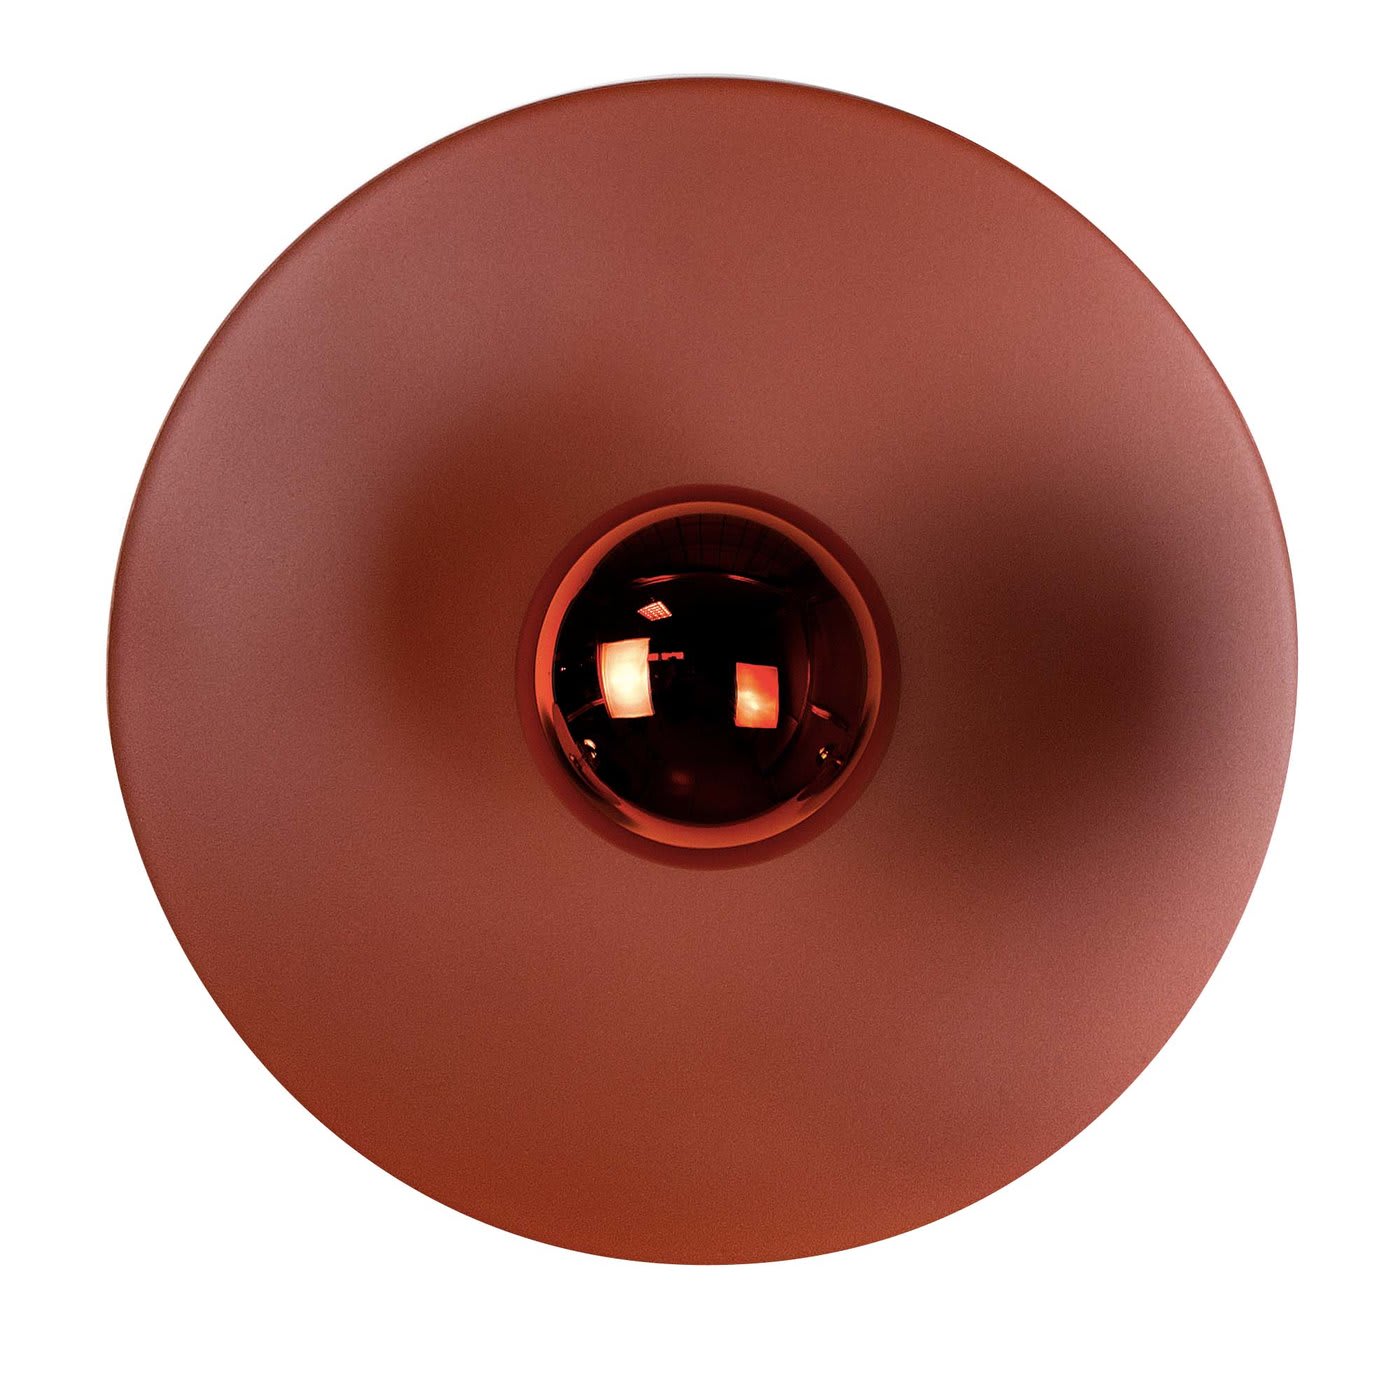 Astro pearl orange wall lamp - Interia